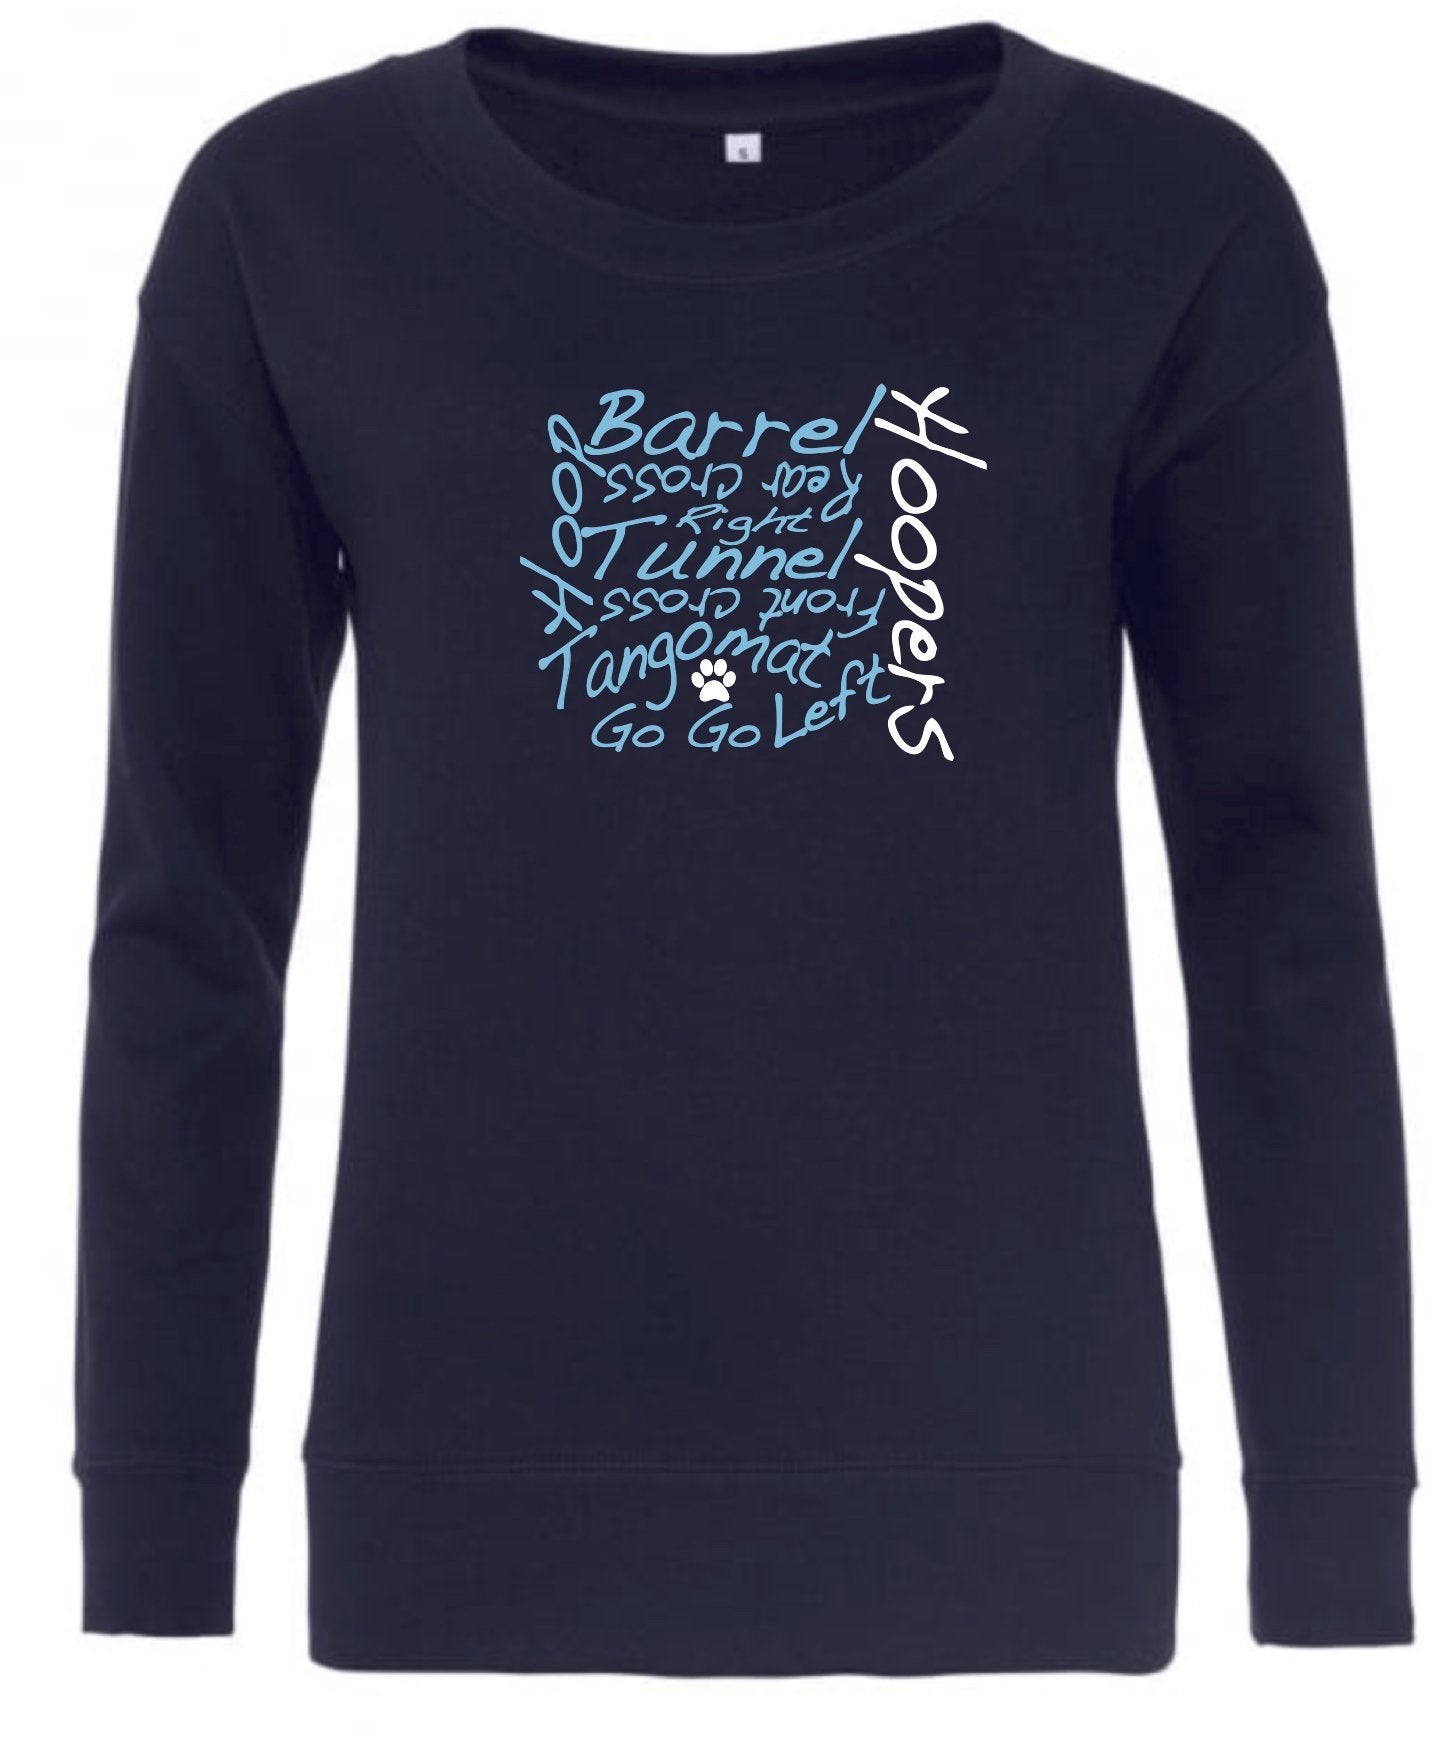 Hoopers Words Women's Sweatshirt - Pooch-